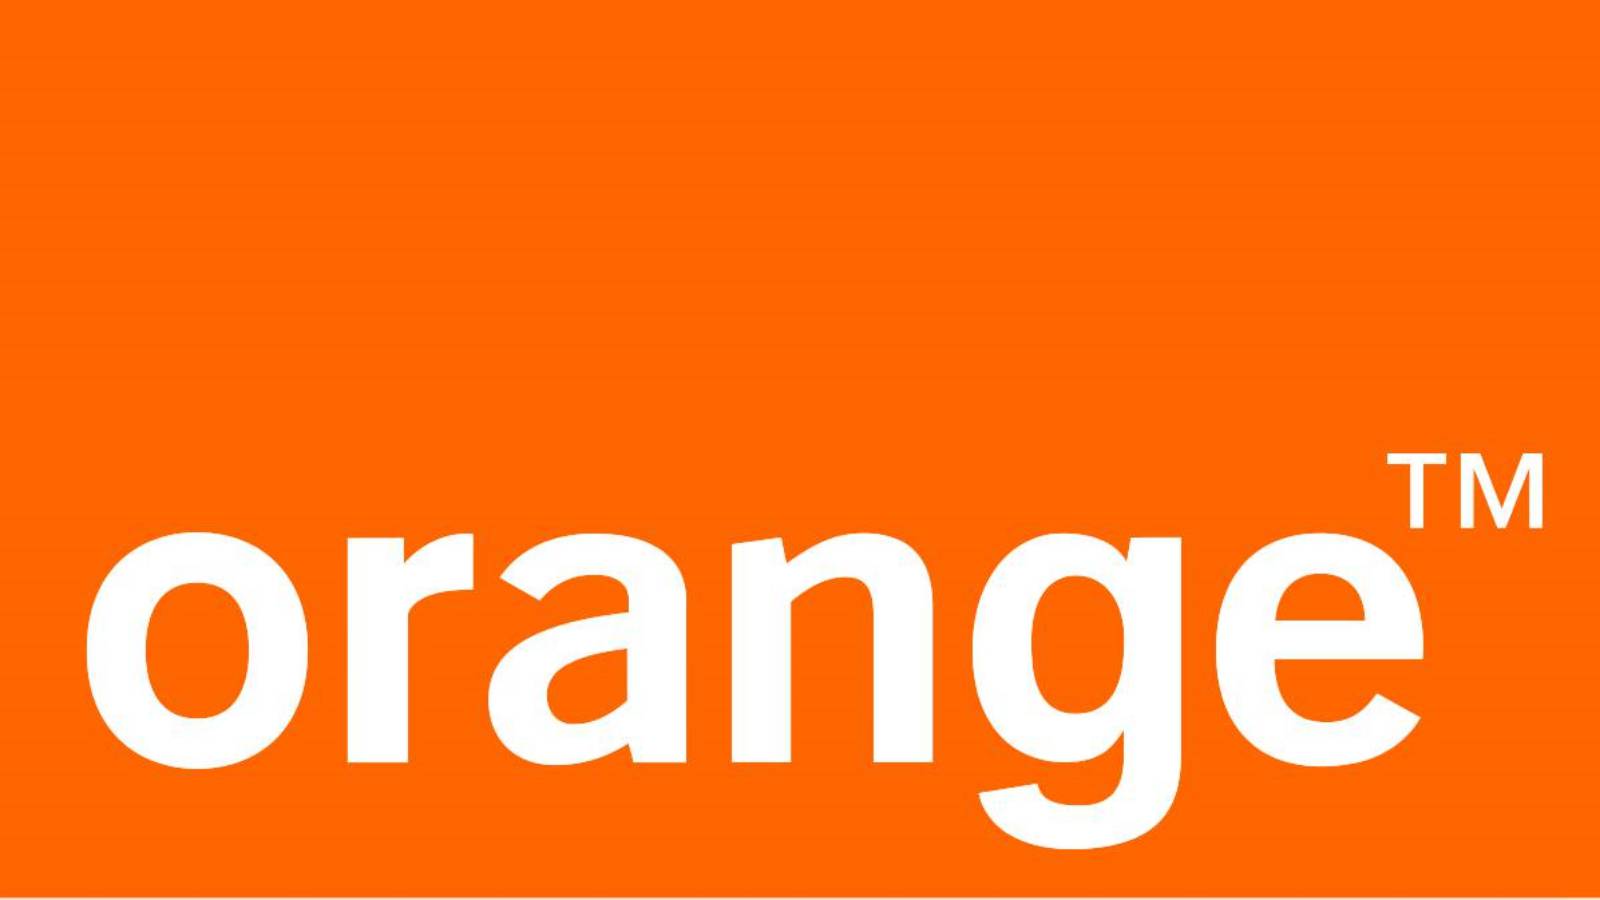 orange eligibilitate